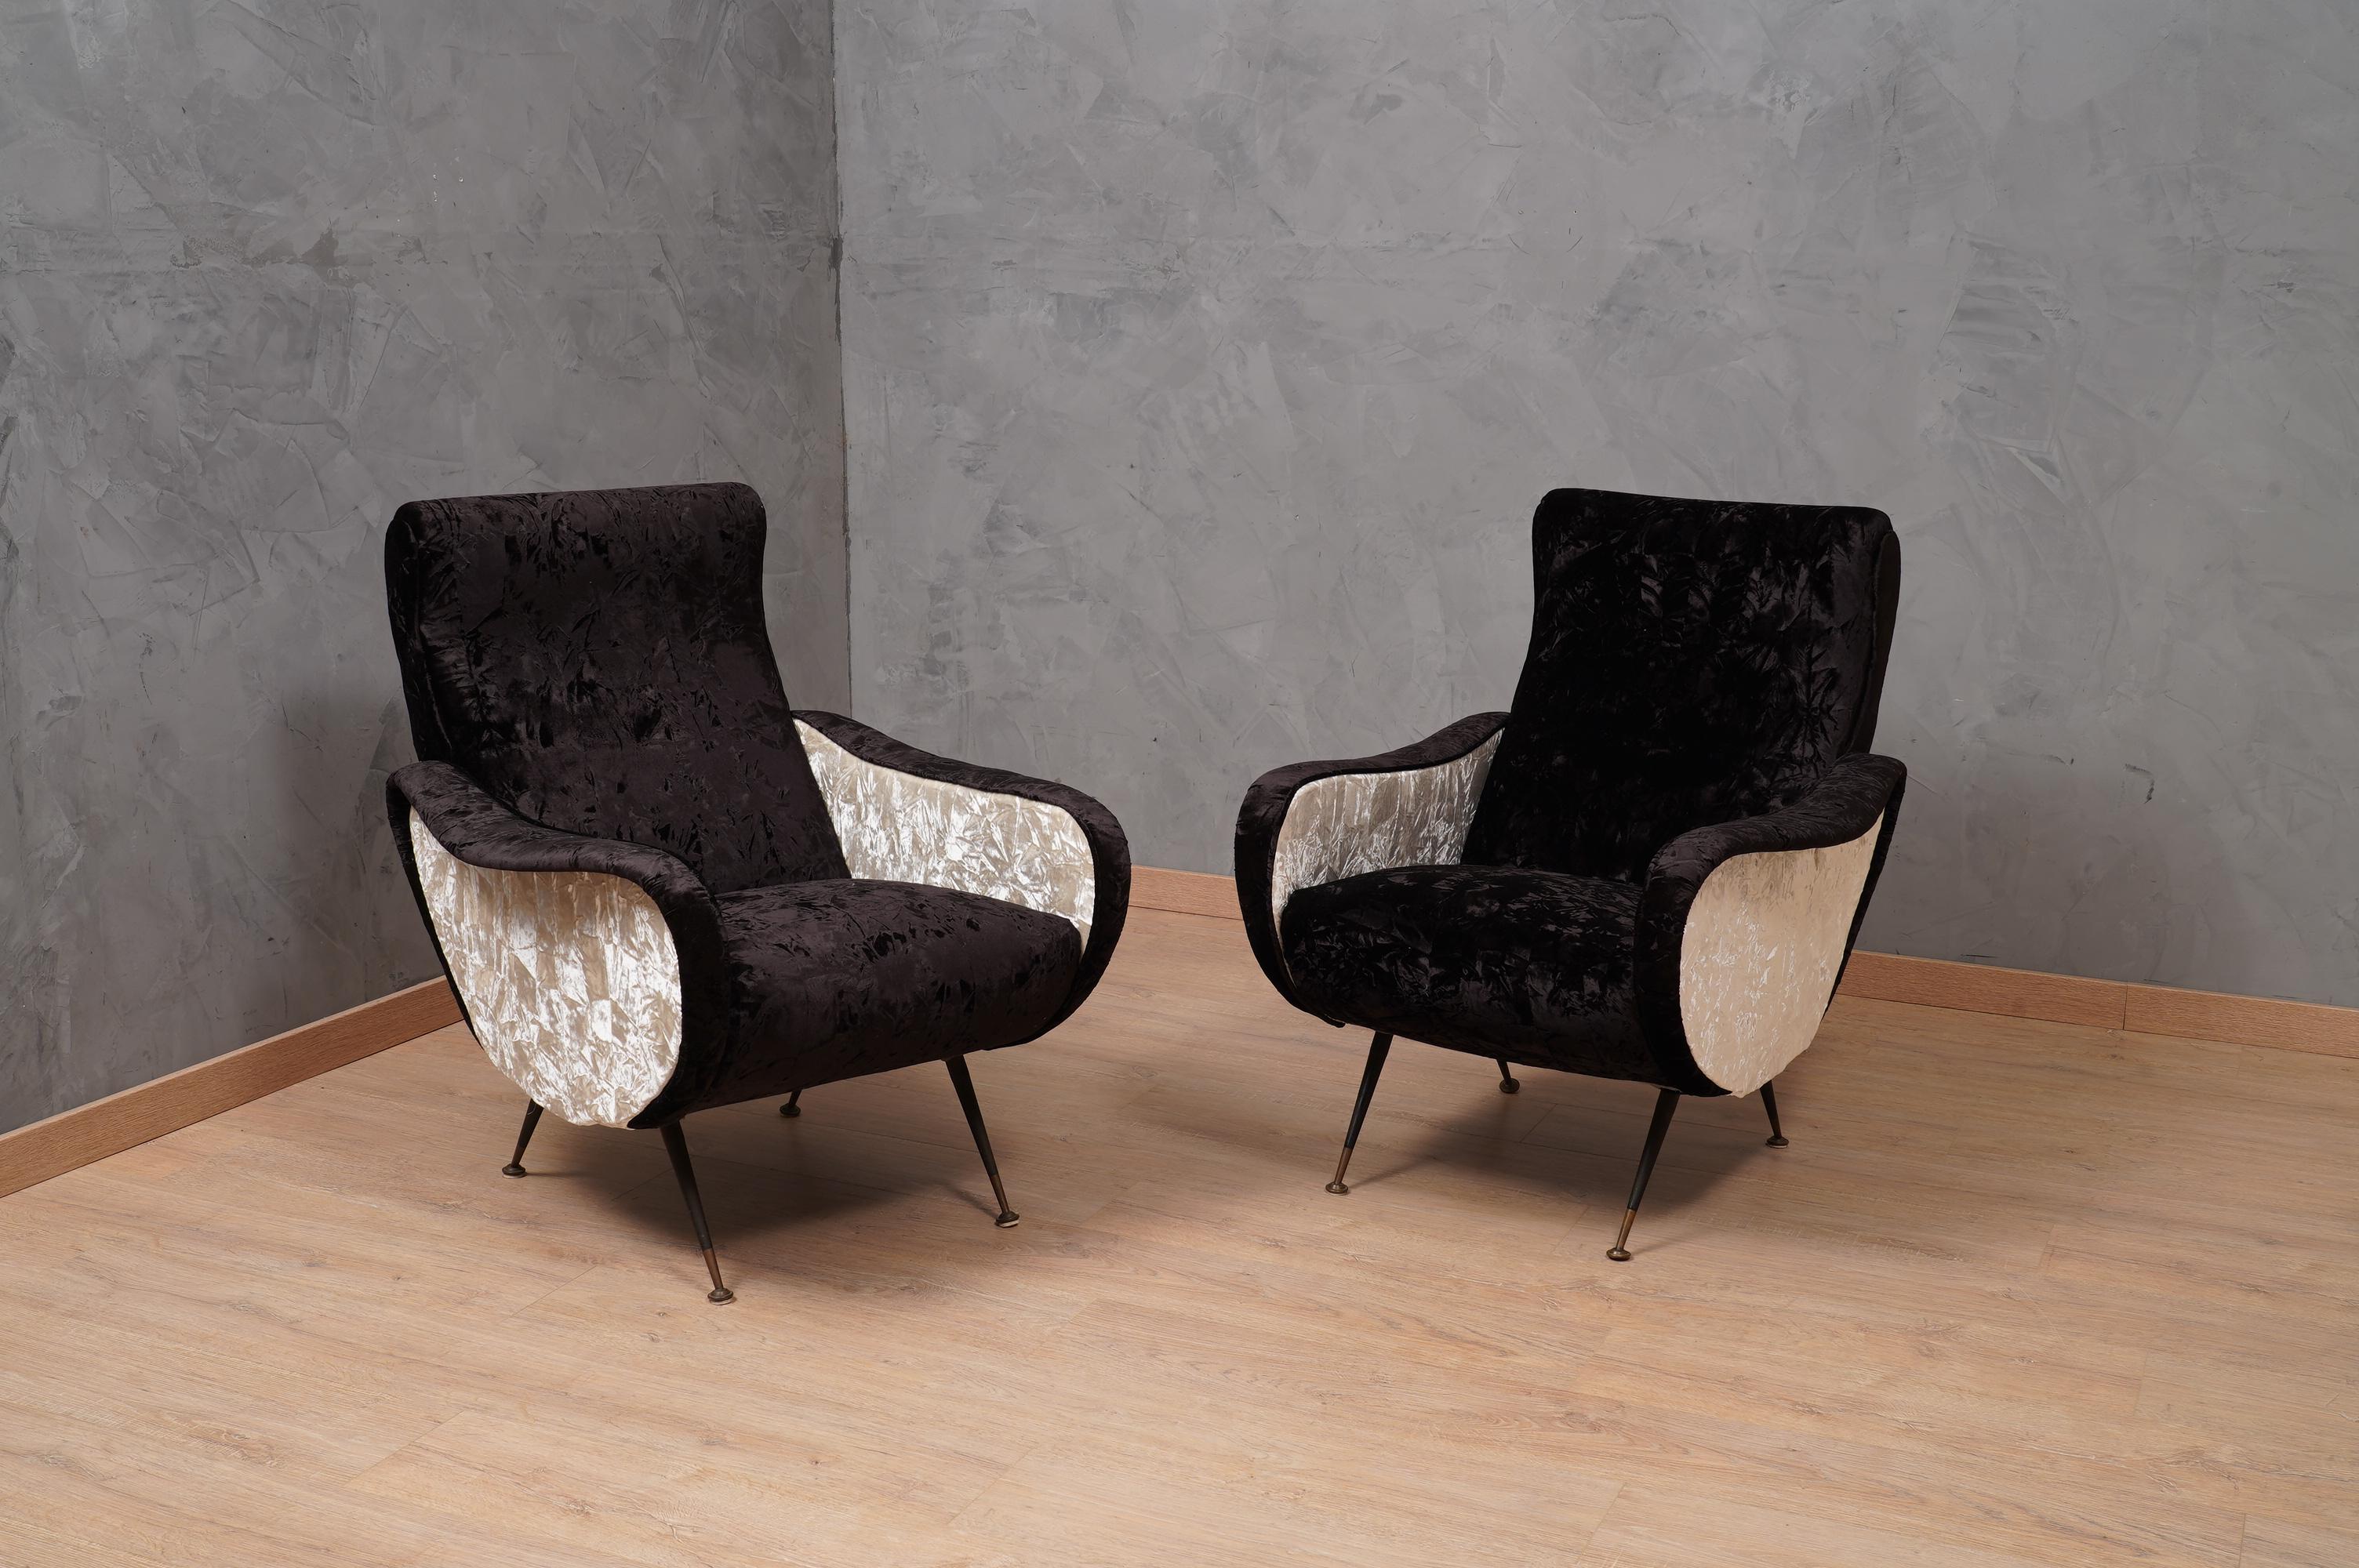 Eine Neuauflage eines klassischen und berühmten italienischen Sesselpaares voller Charme, verschönert mit einer Verbindung aus feinem Samt.

Die Sessel sind mit einer Kombination aus zwei Samtstoffen renoviert worden. Es wurden zwei zerknitterte